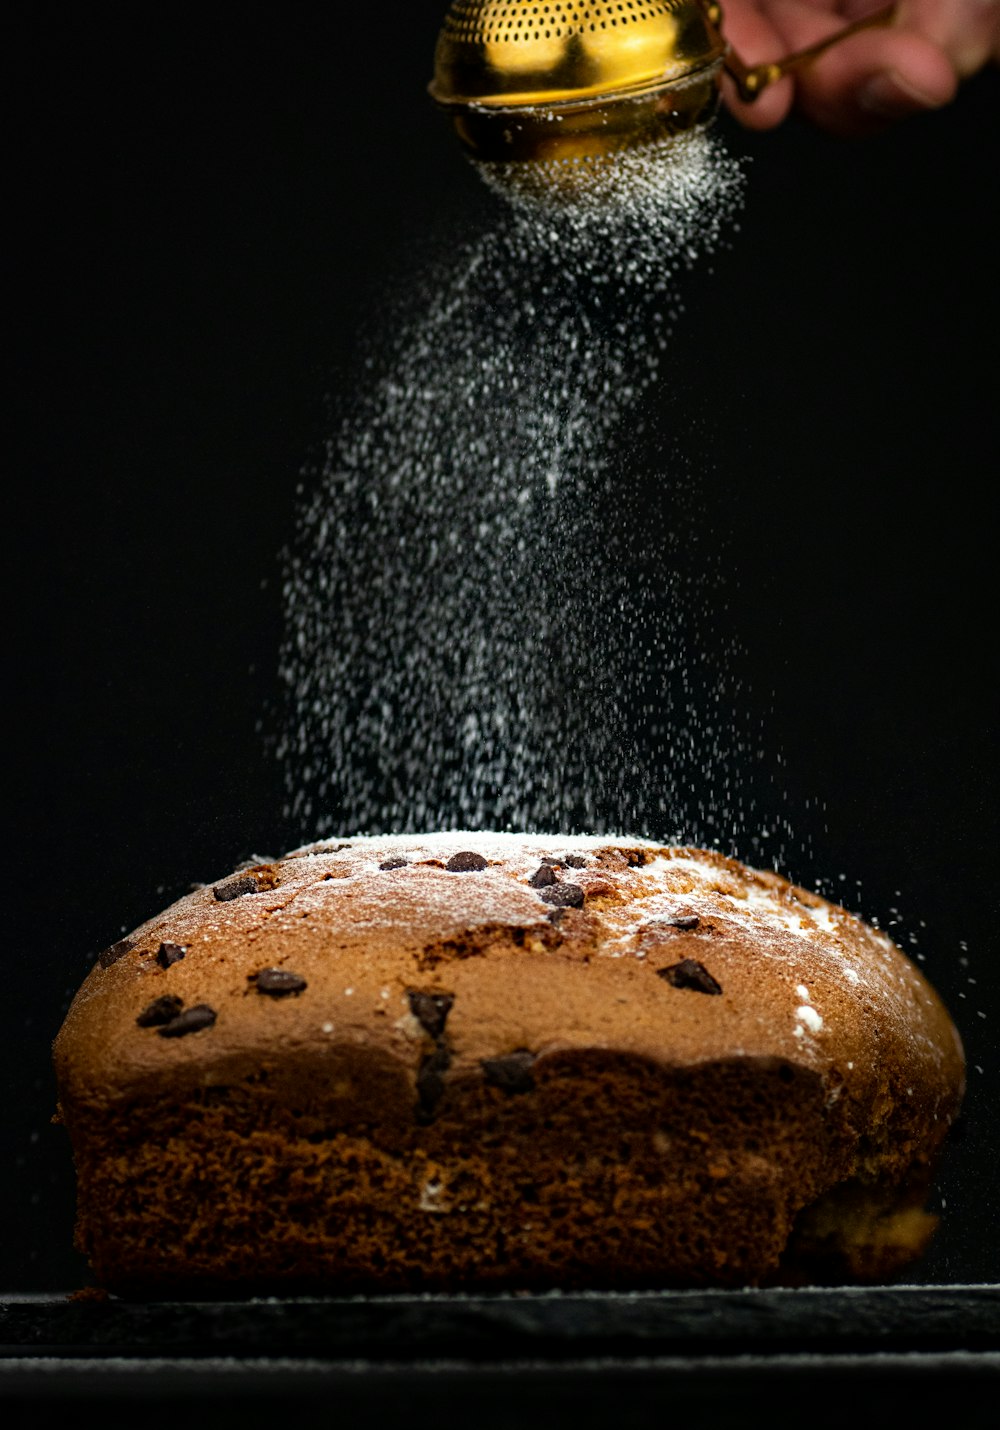 une personne saupoudre du sucre sur un gâteau